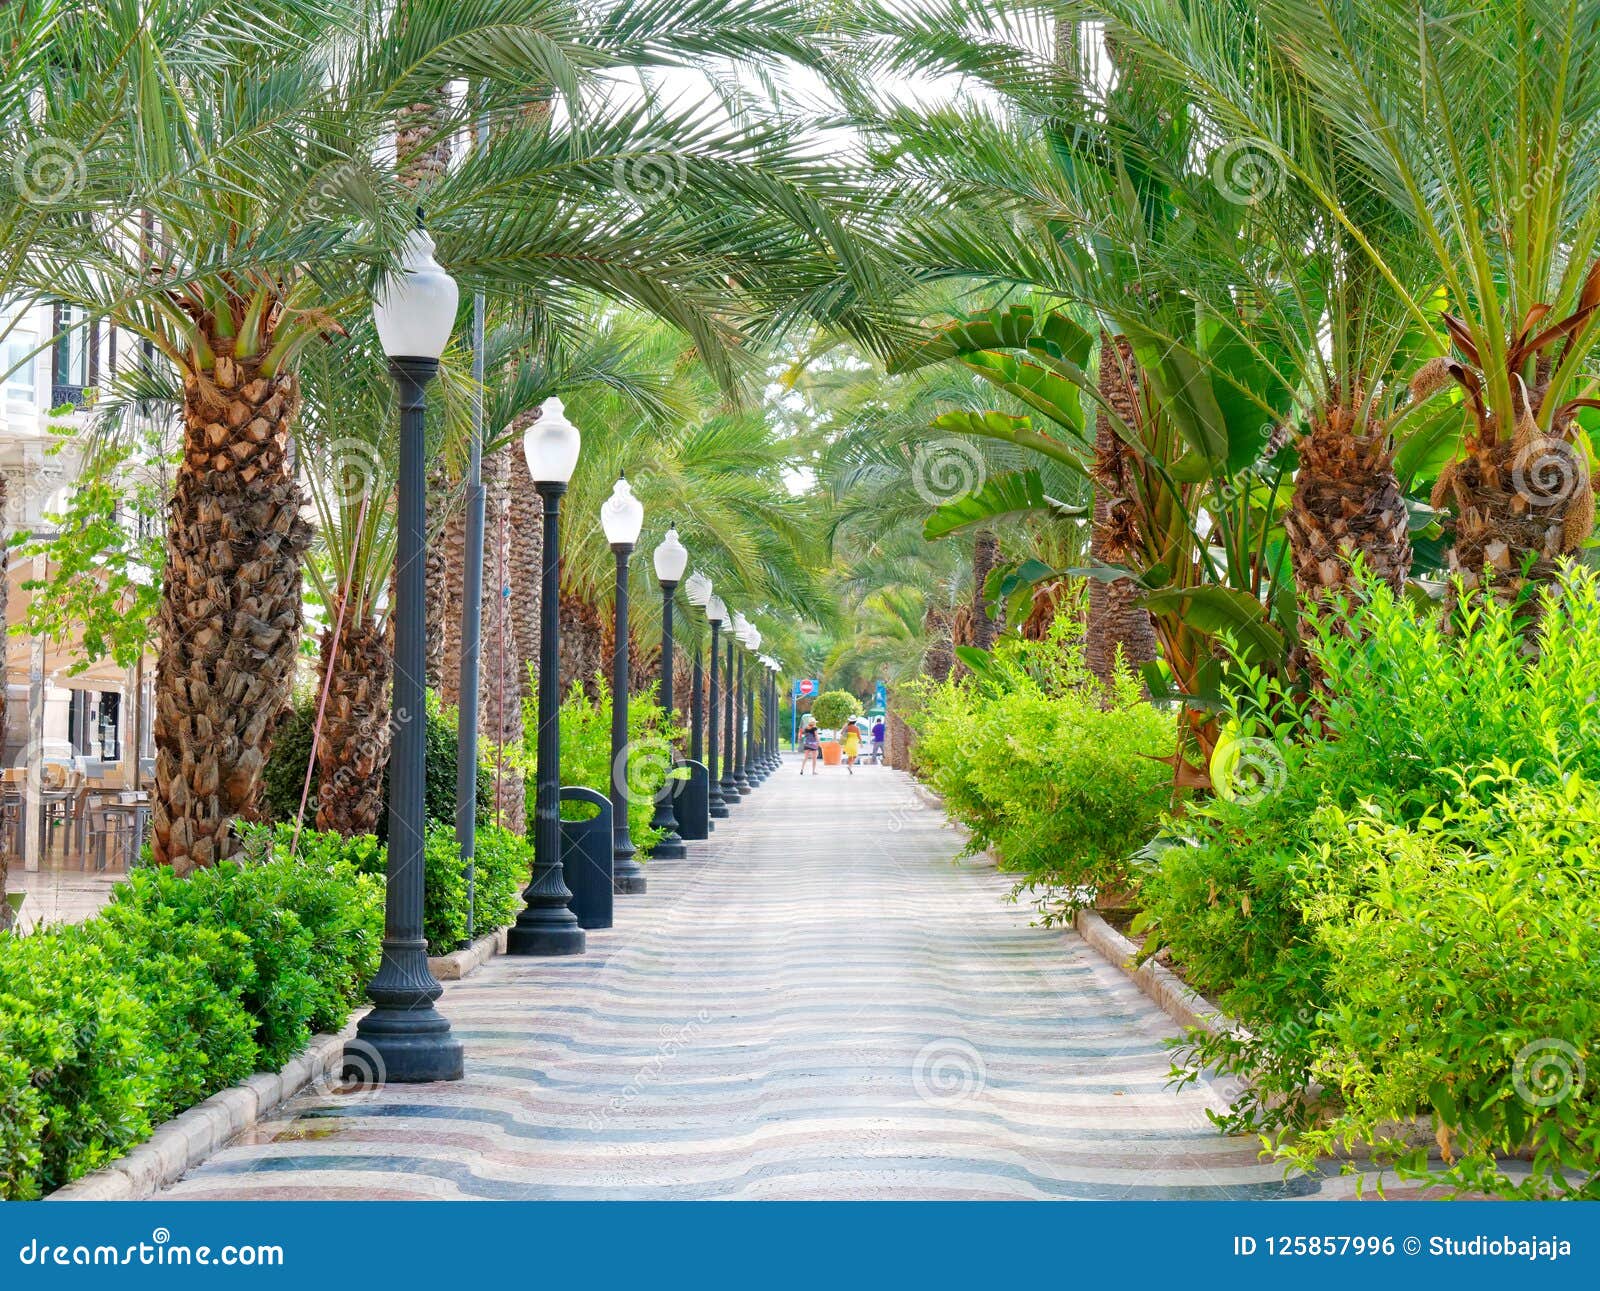 avenue of palms in alicante. main promenade for tourists explanada. spain.